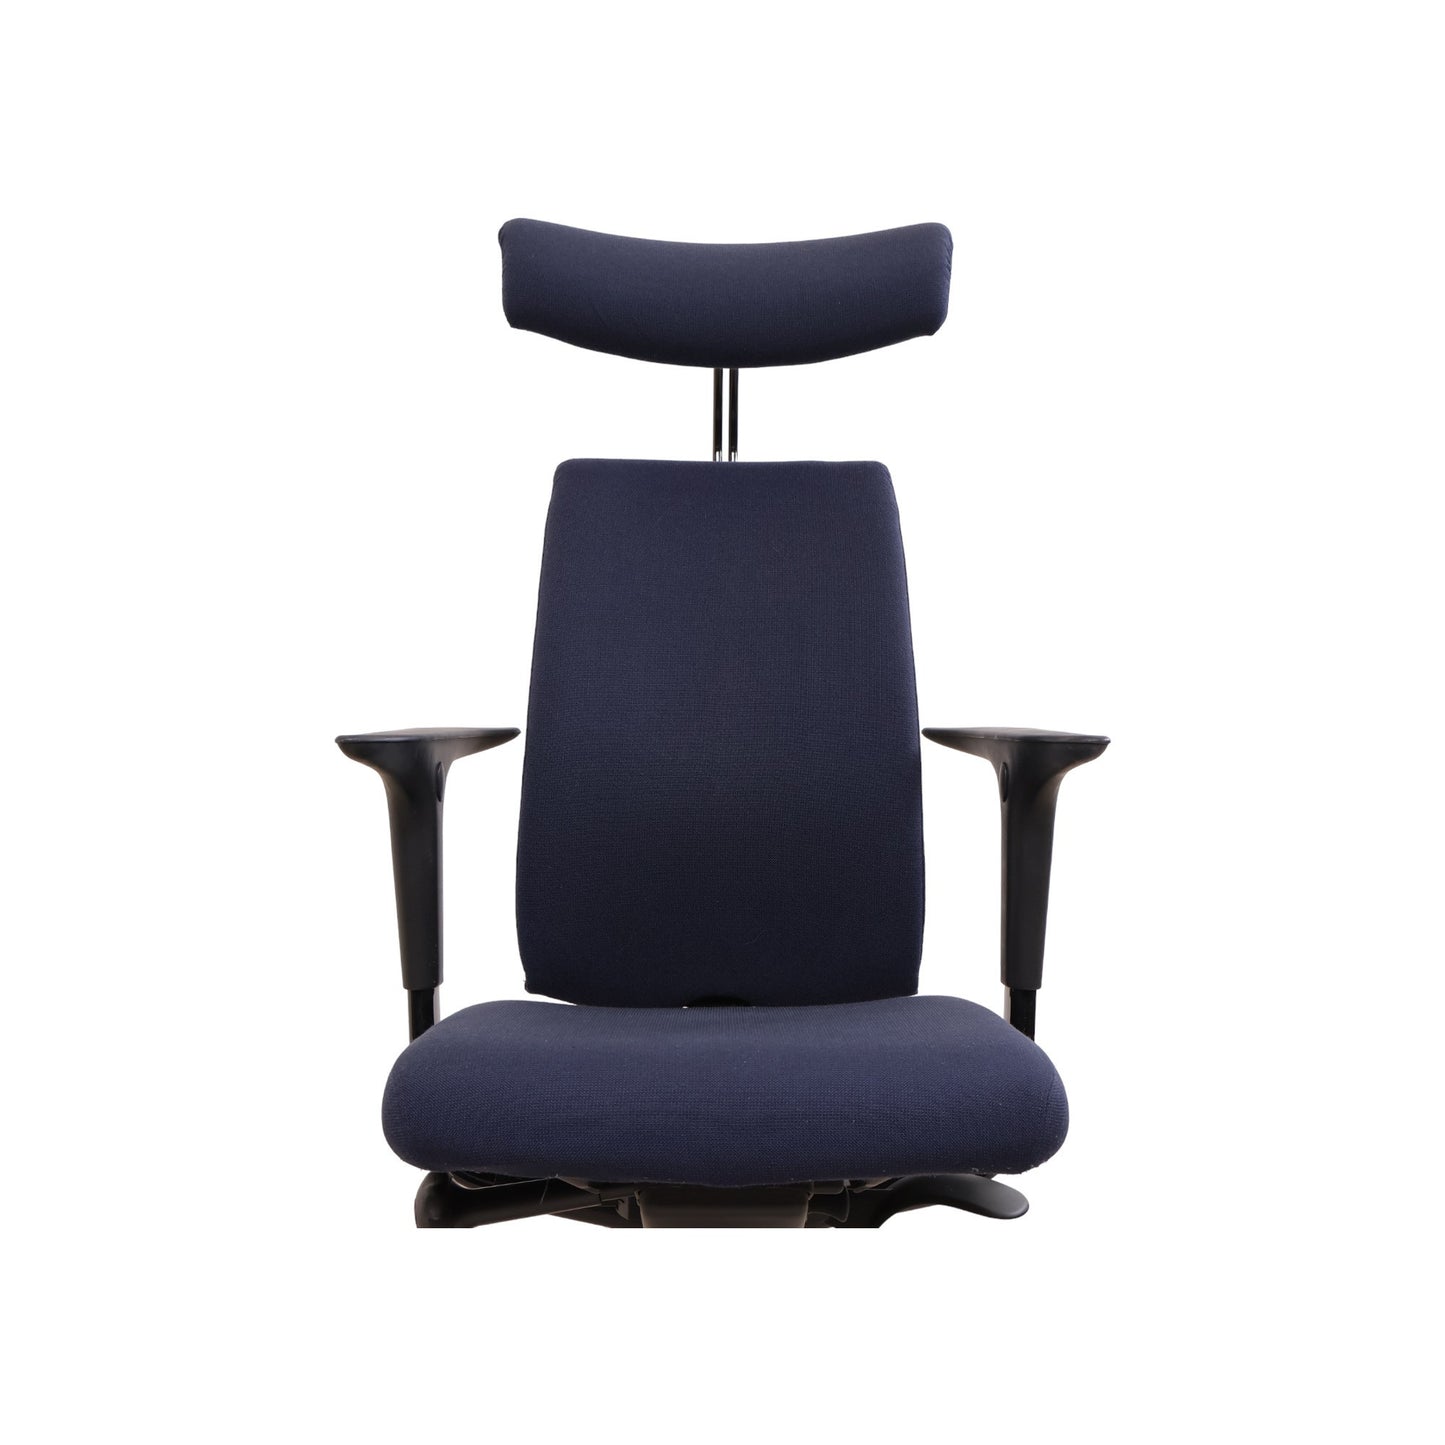 Nyrenset | Håg H05 kontorstol med nakkestøtte i fargen blå